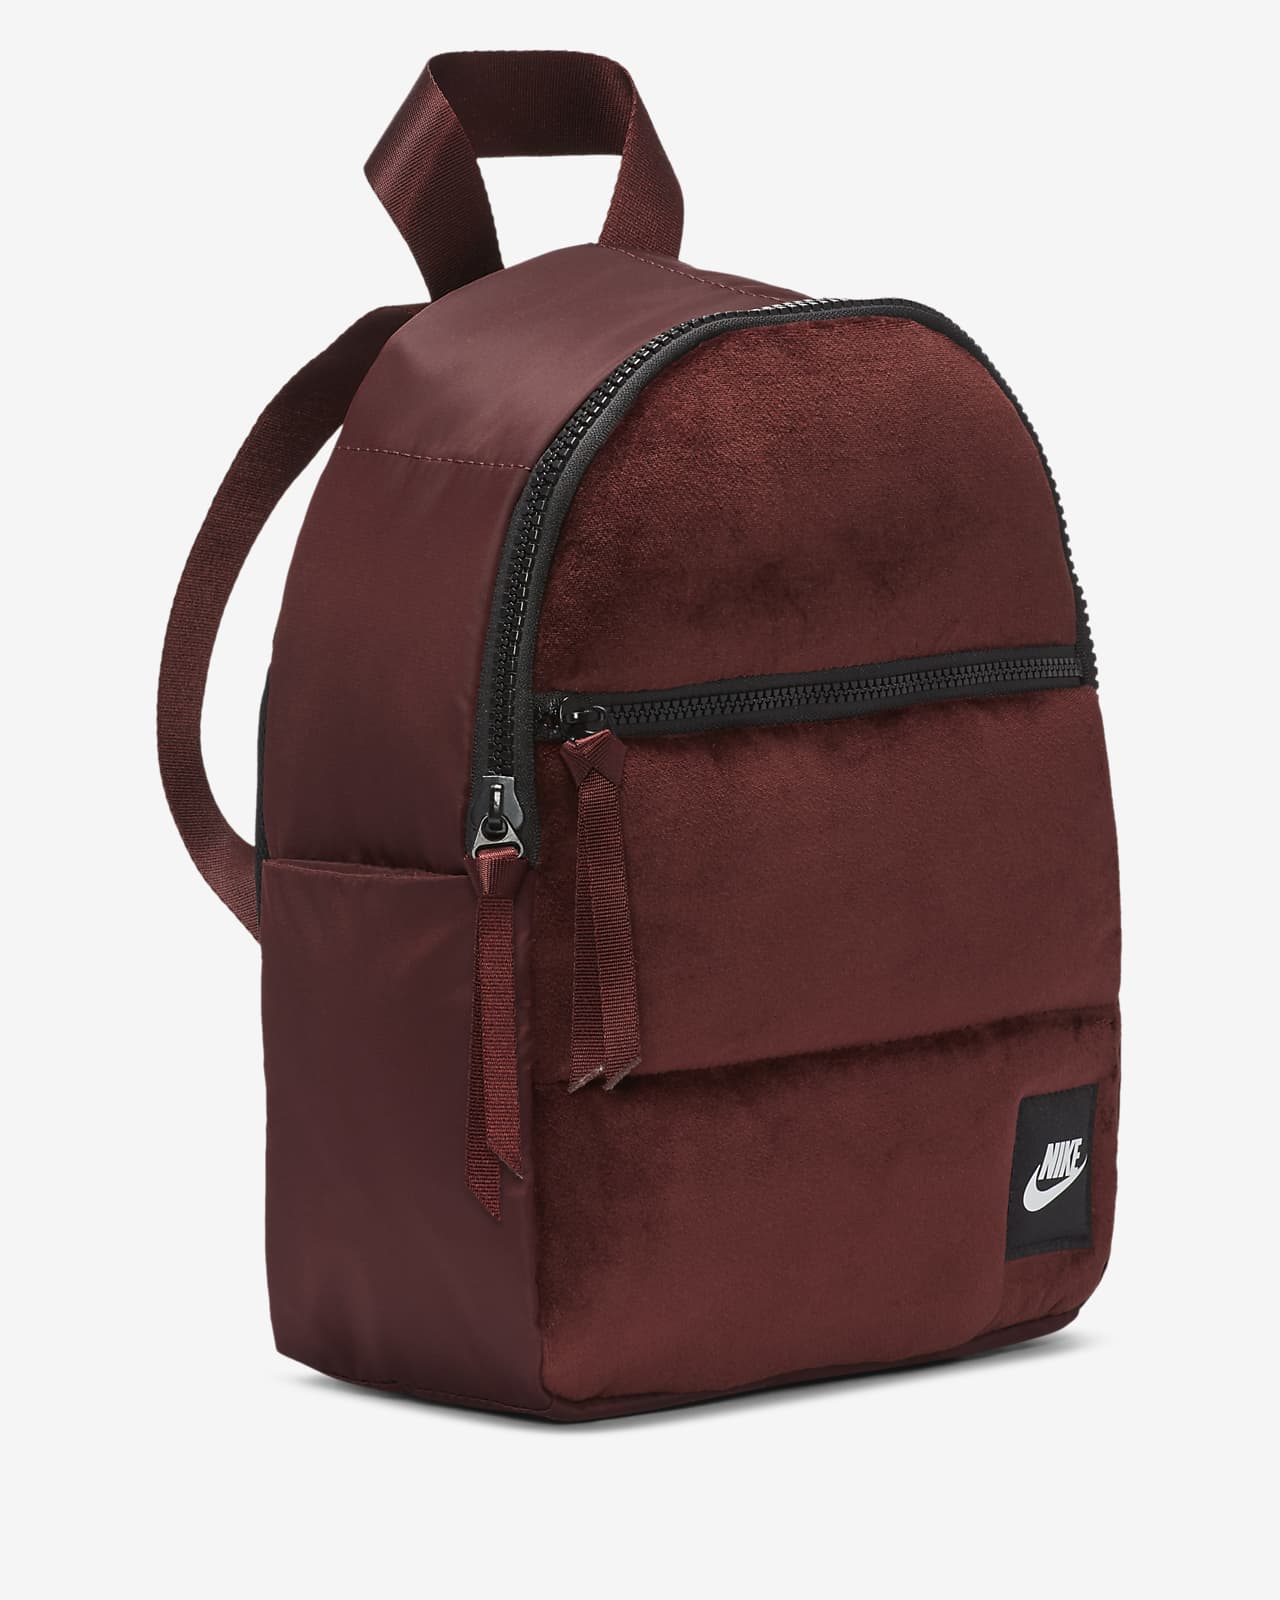 nike mini backpack red